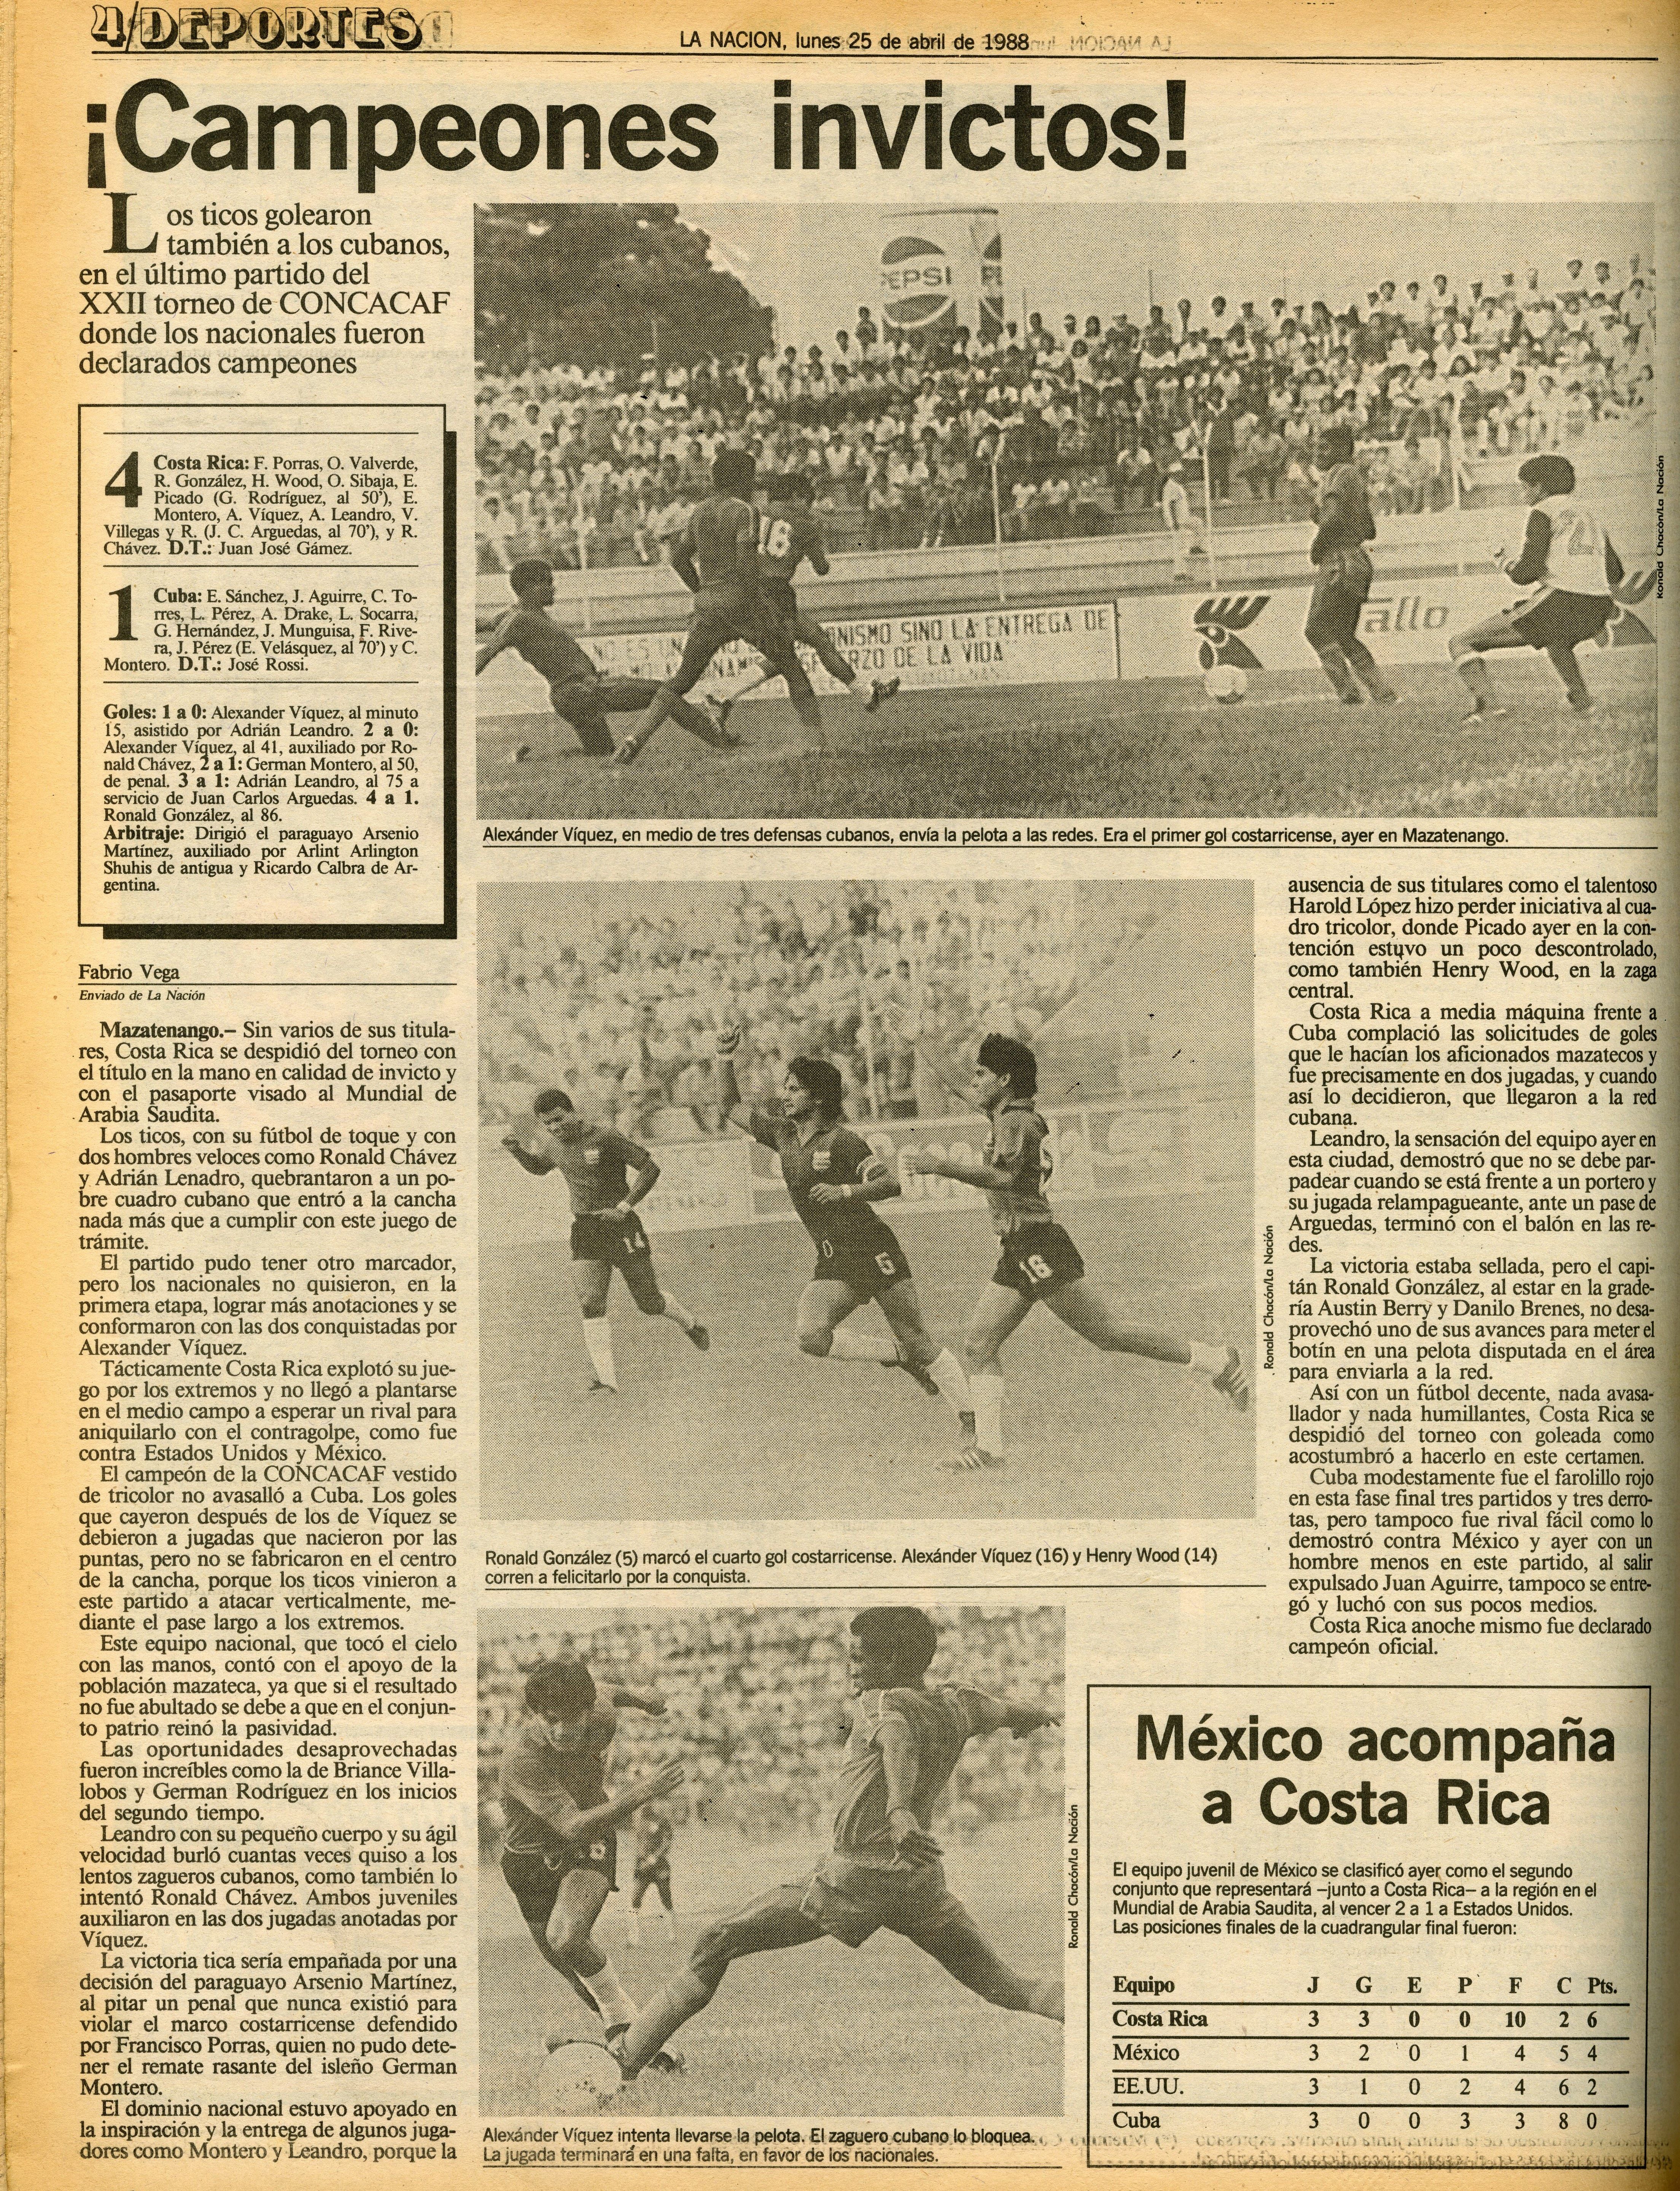 Esta fue la página publicada por 'La Nación' del 25 de abril de 1988 sobre los 'Carasucias', titulada: ¡Campeones invictos!